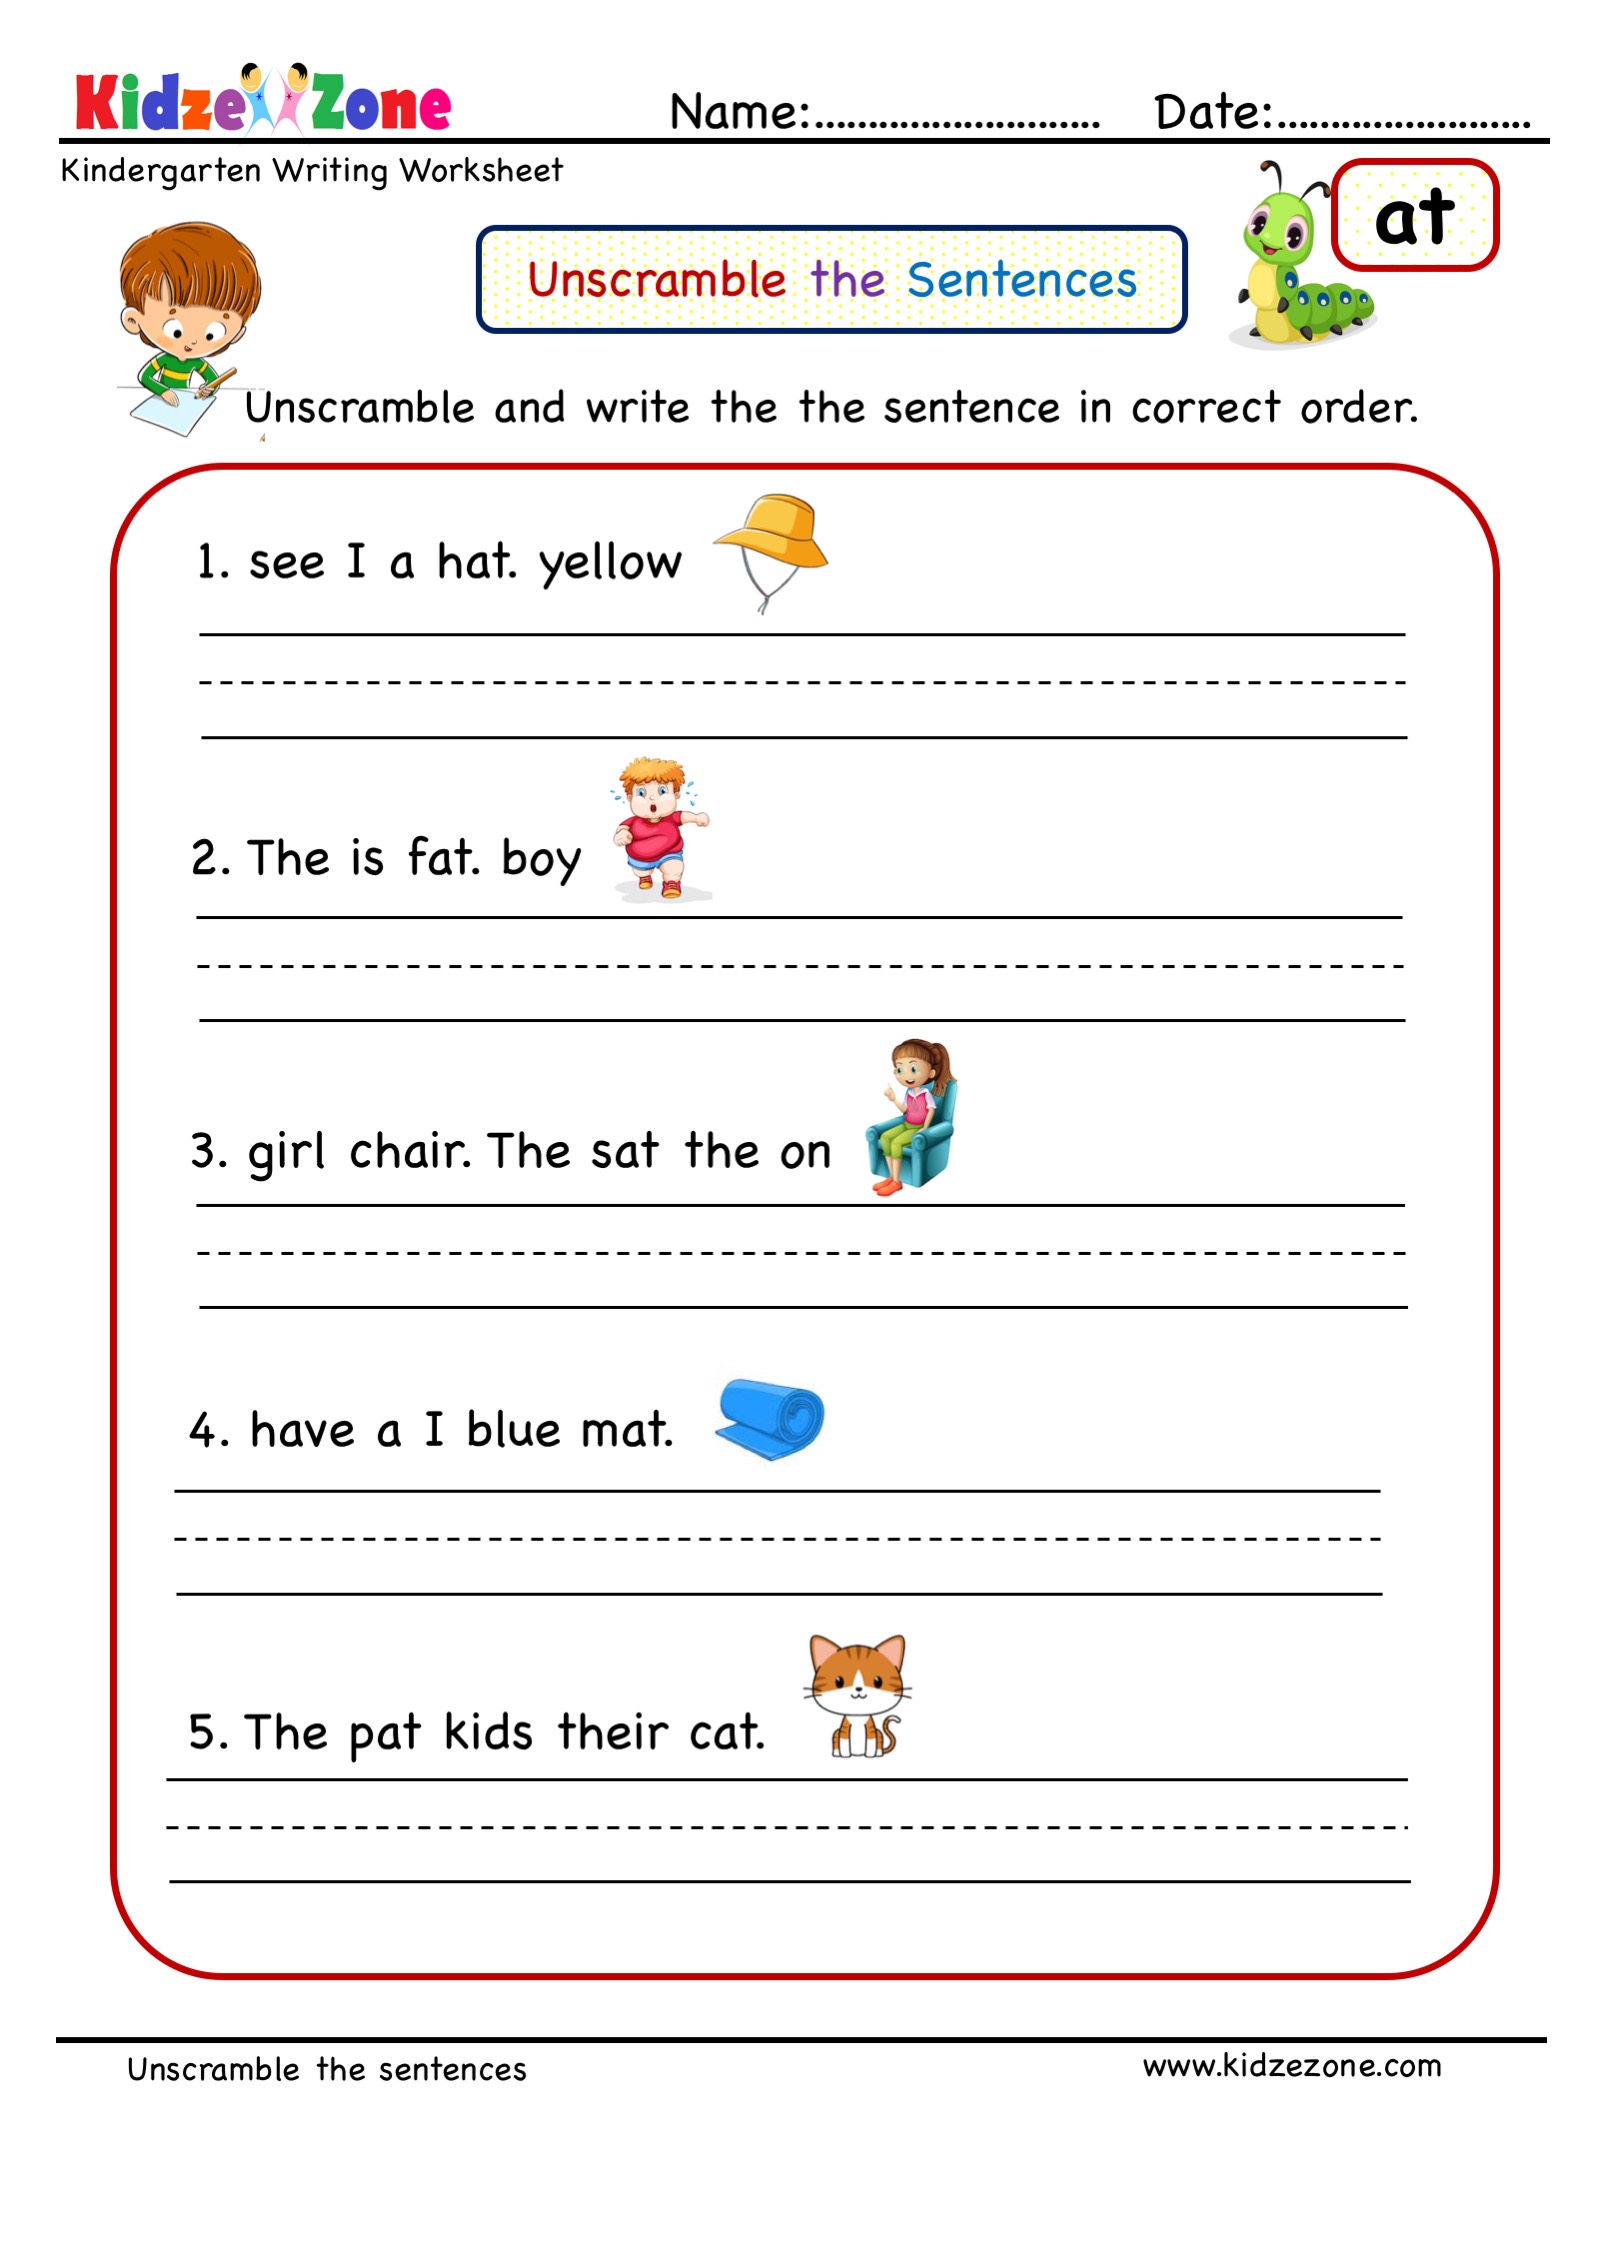 jumbled-sentences-online-worksheet-jumbled-sentences-part-1-worksheet